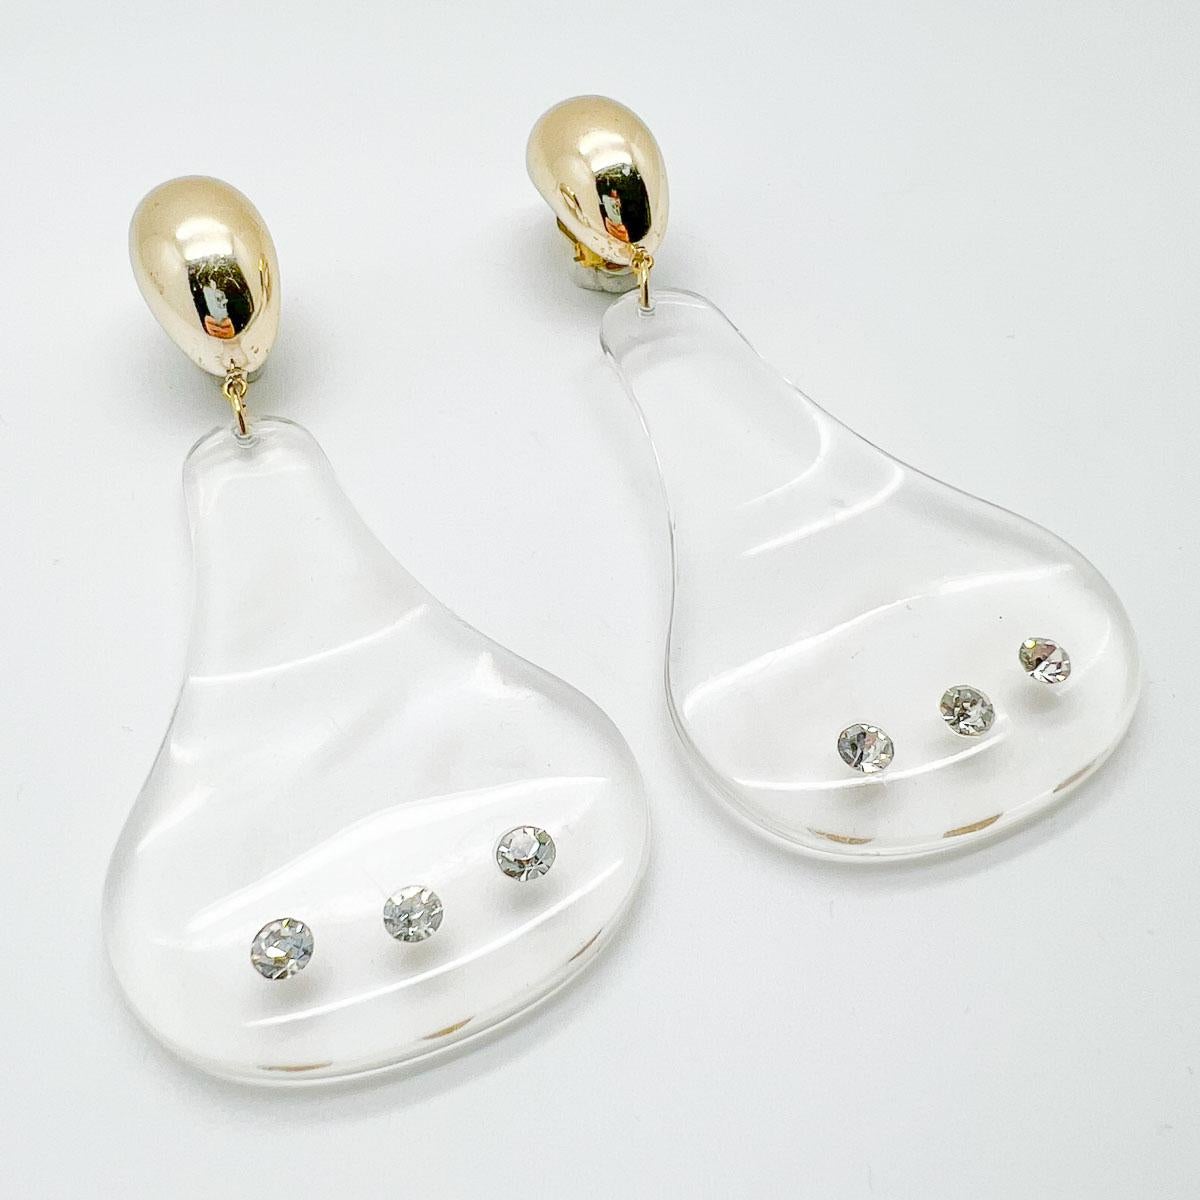 1970's earrings style